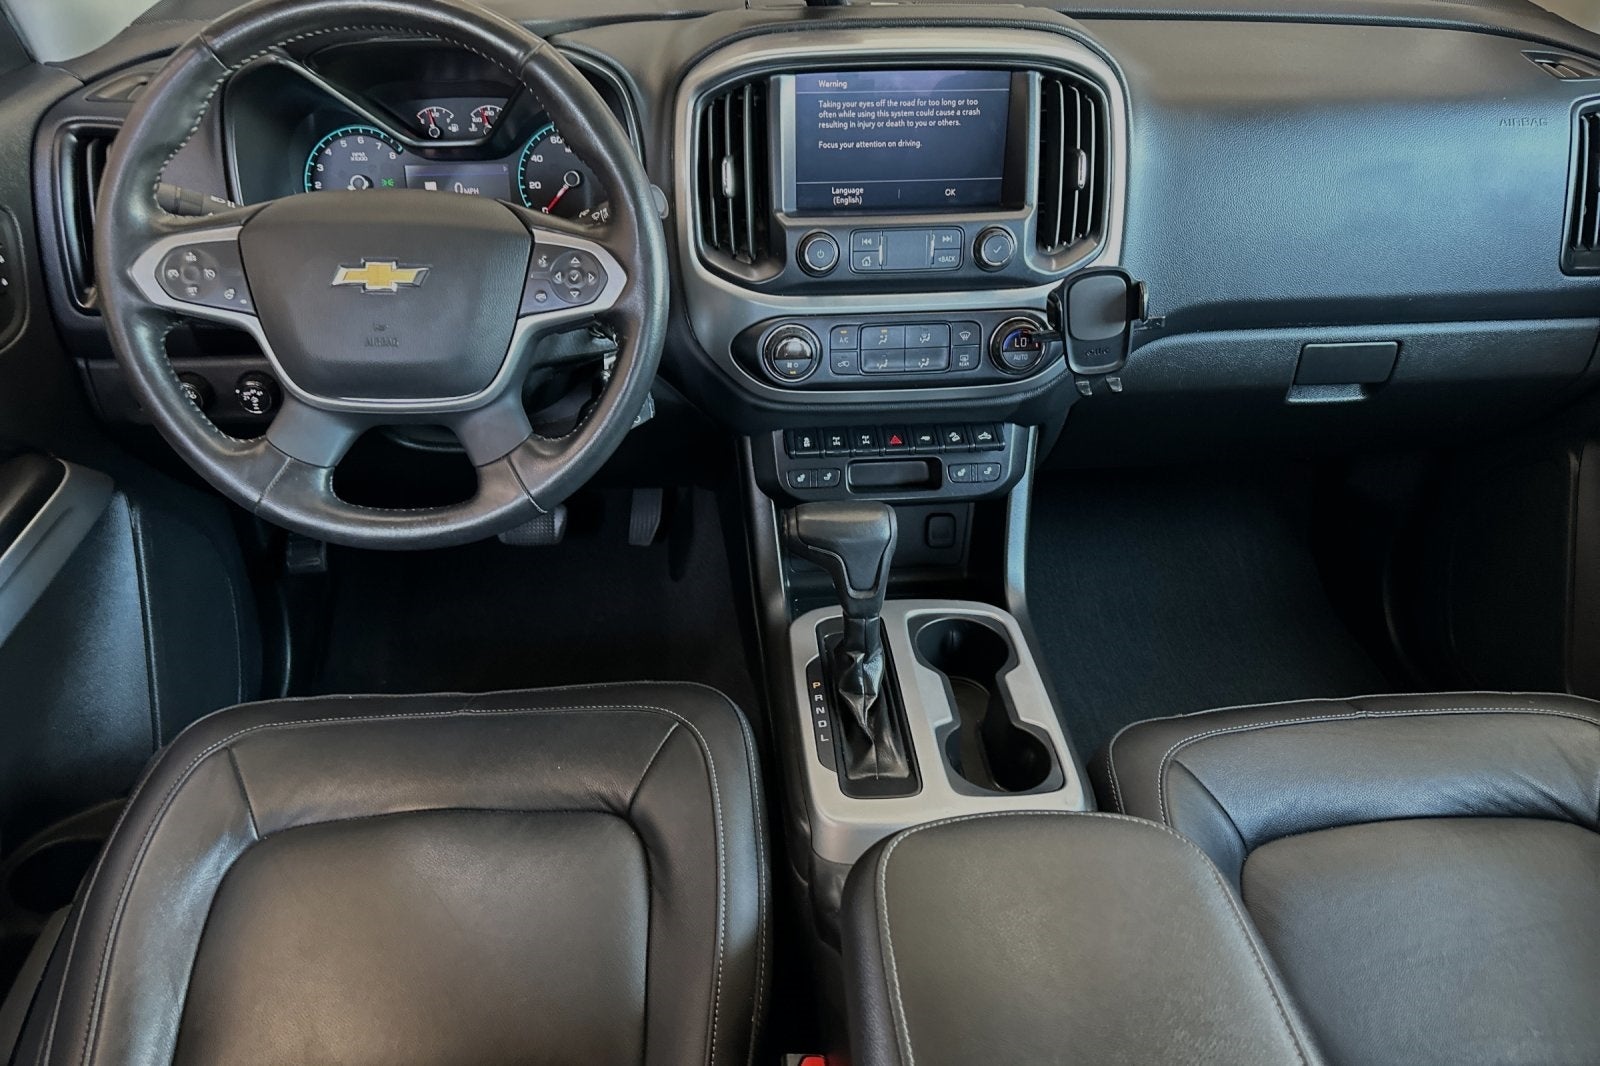 2021 Chevrolet Colorado ZR2 4WD